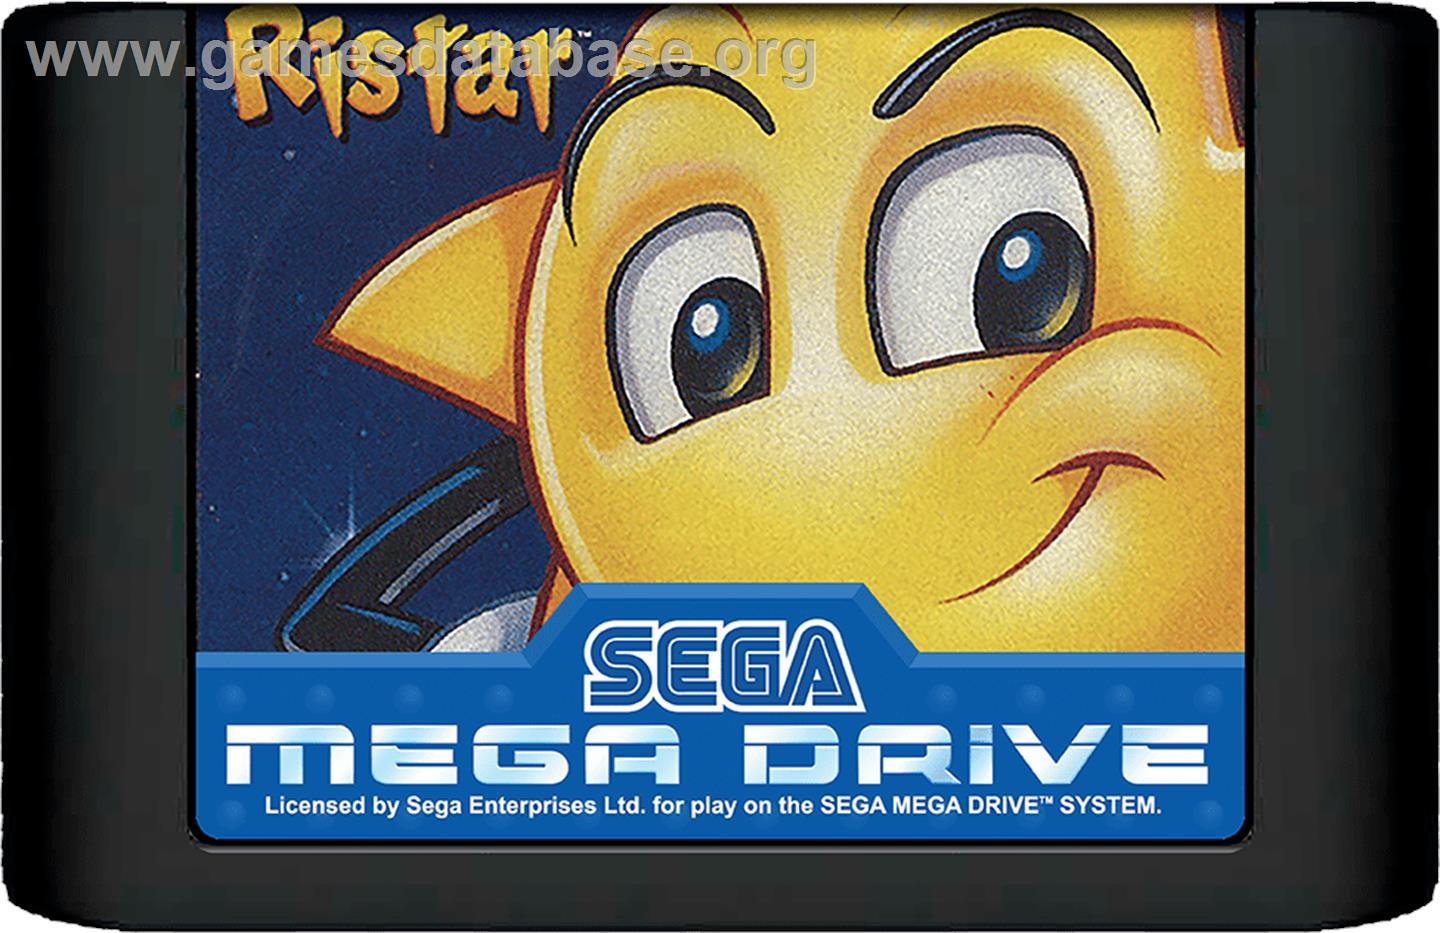 Ristar - Sega Genesis - Artwork - Cartridge